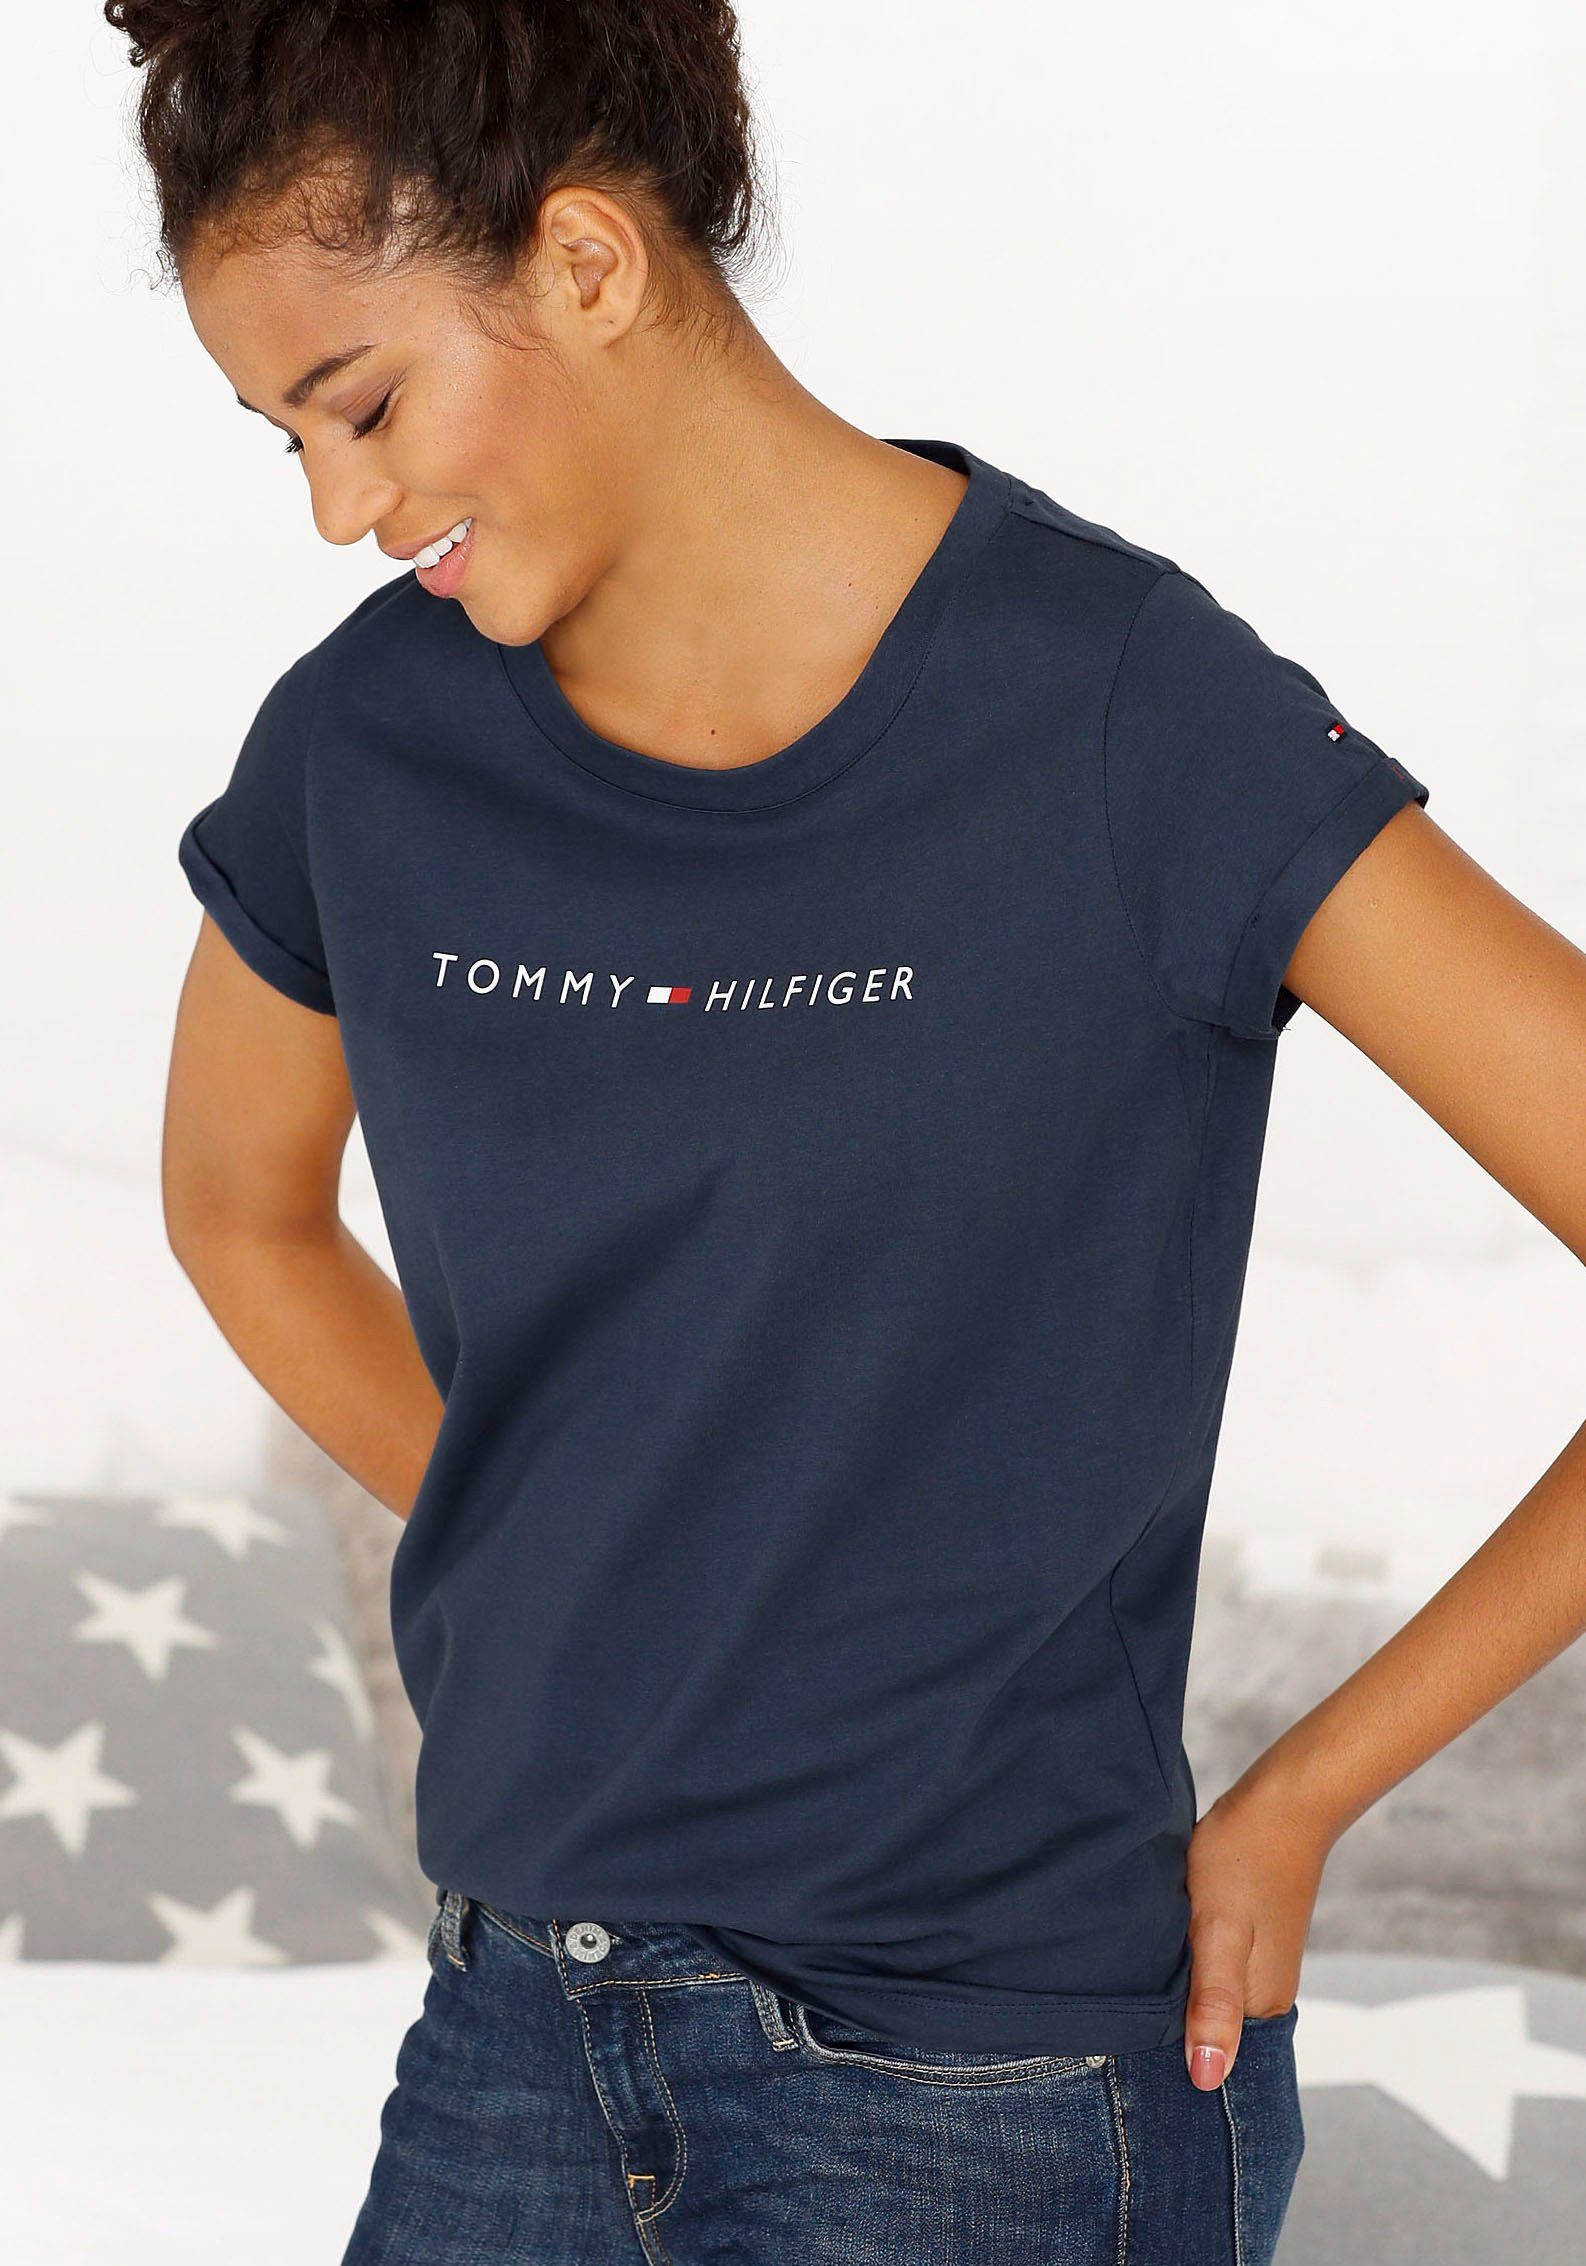 Tommy Hilfiger Damen Online-Shop | OTTO